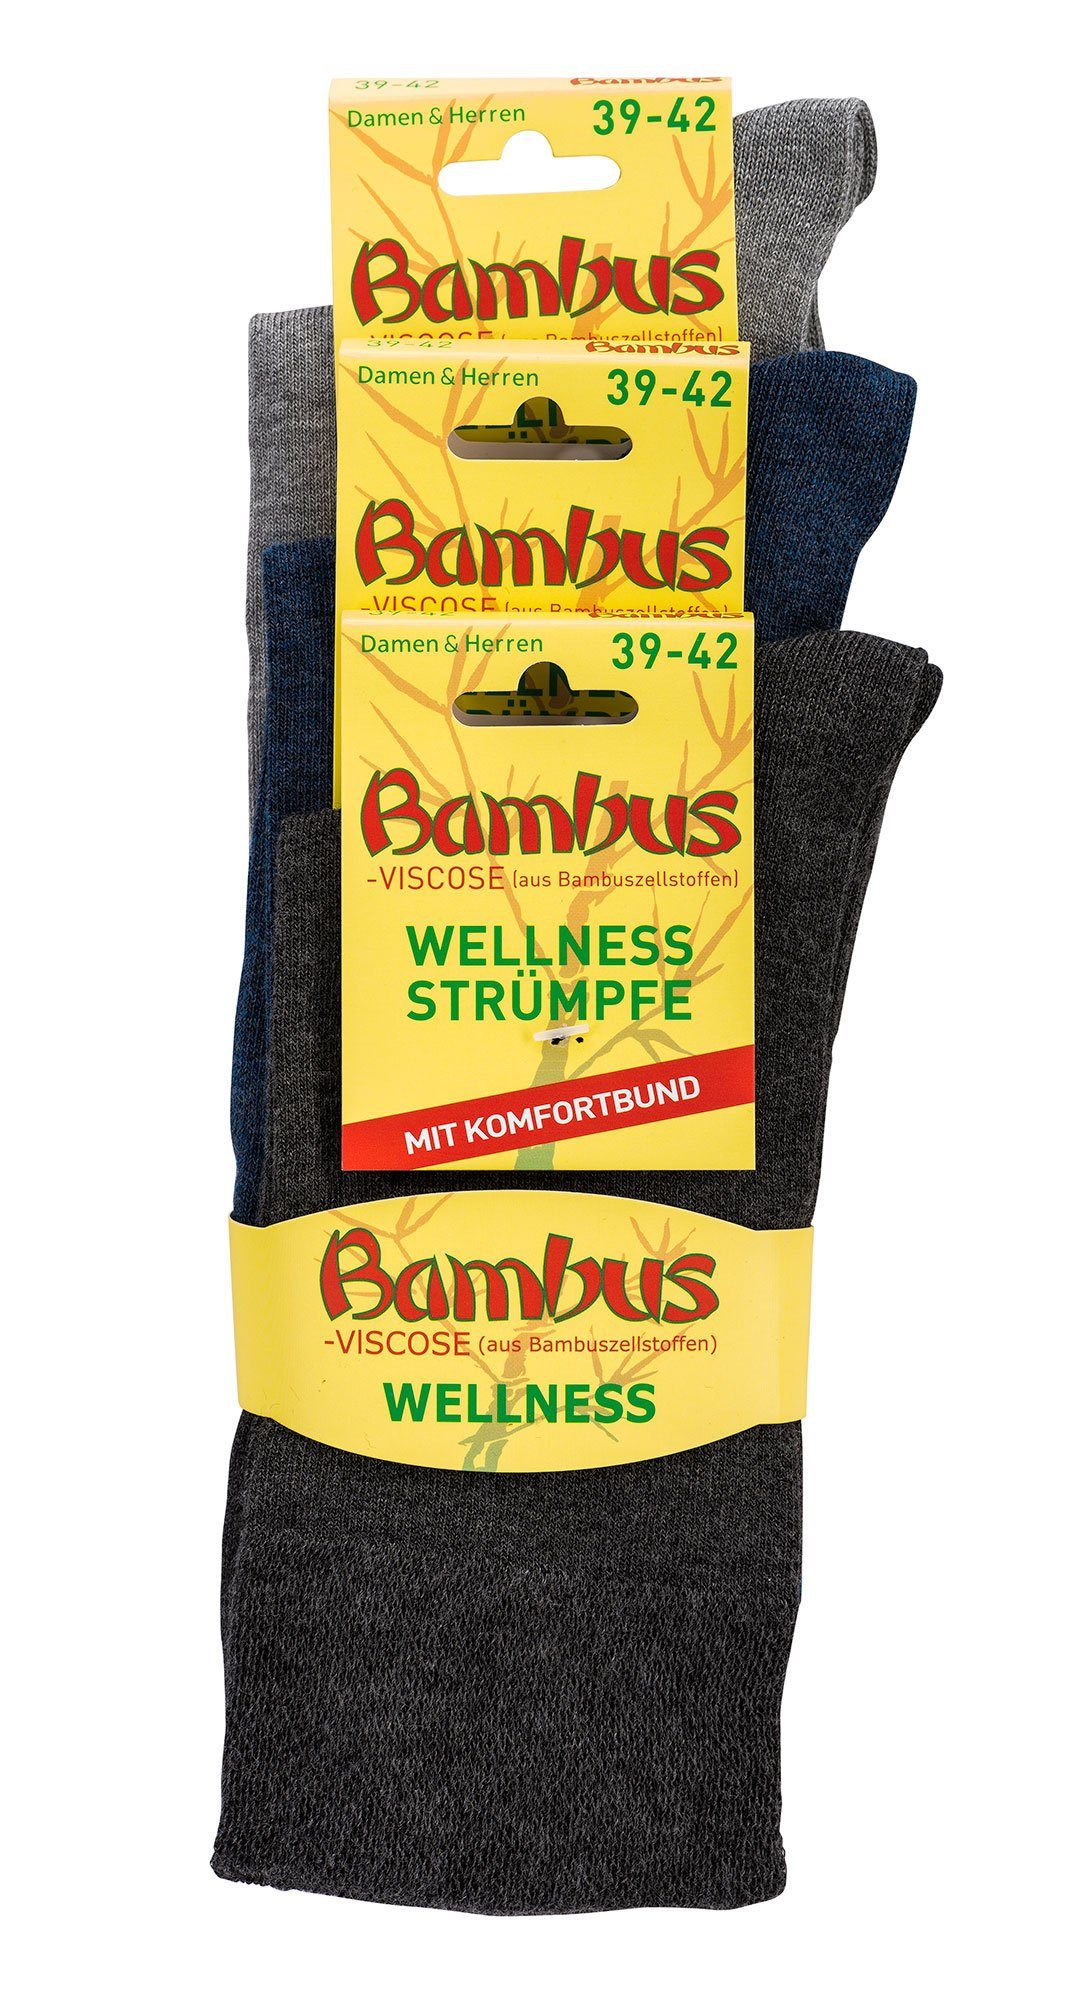 TippTexx 24 Freizeitsocken 6 Paar in Socken Antiloch-Garantie mit weiche Melange-Farben Bambus